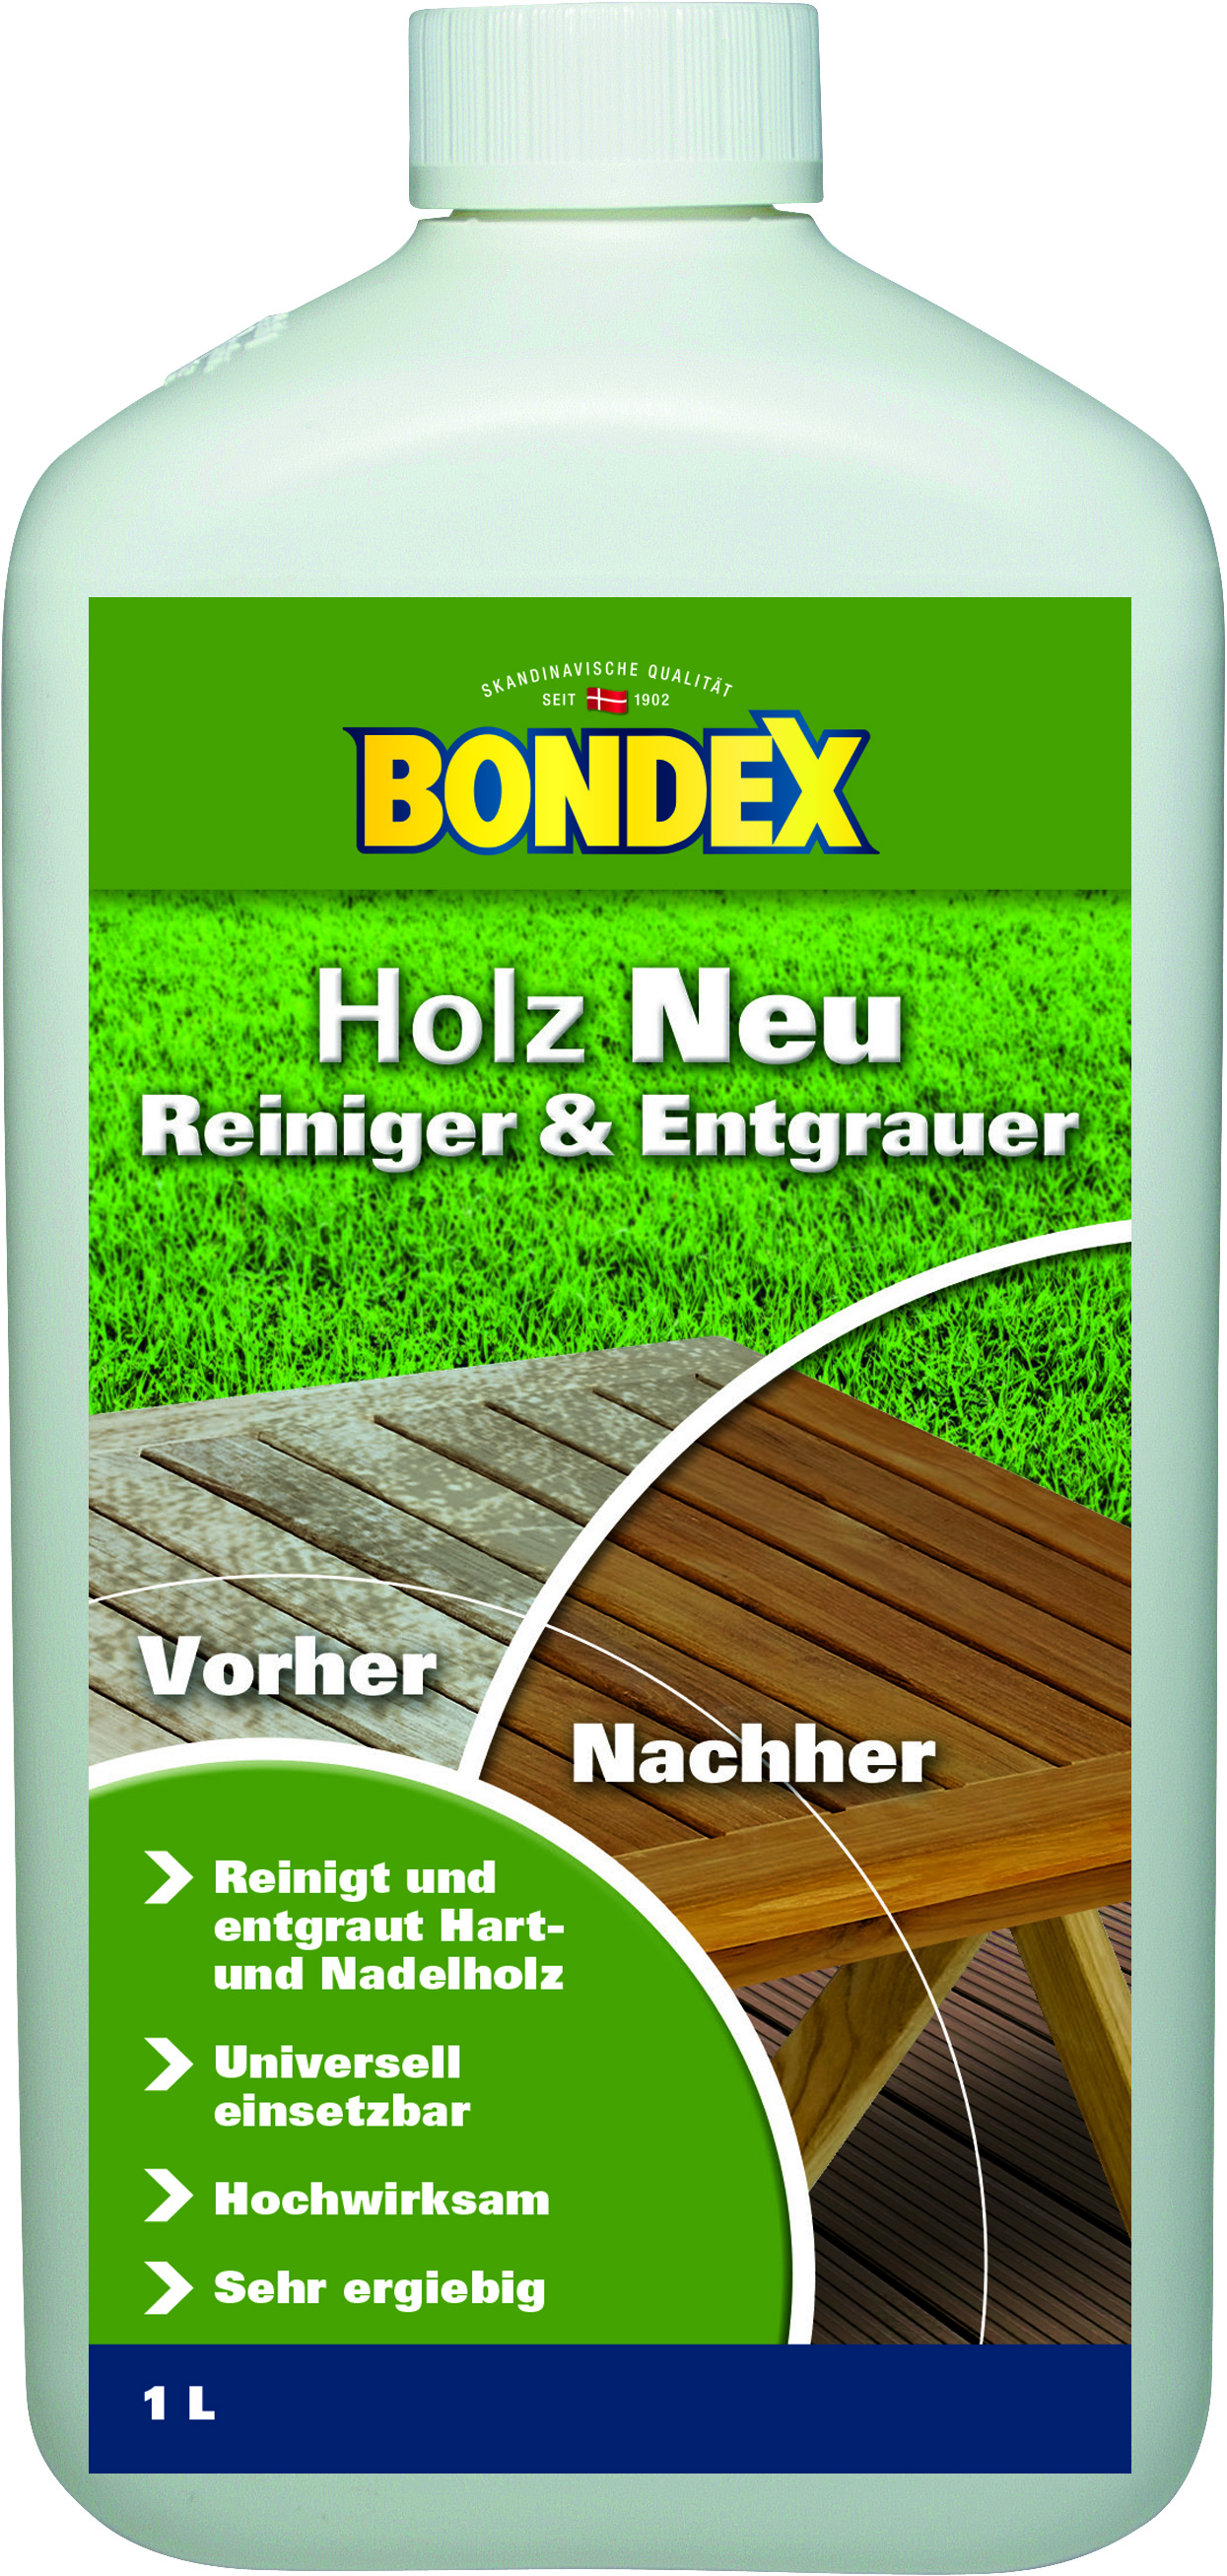 Bondex Holz Neu Reiniger & Entgrauer, 1L